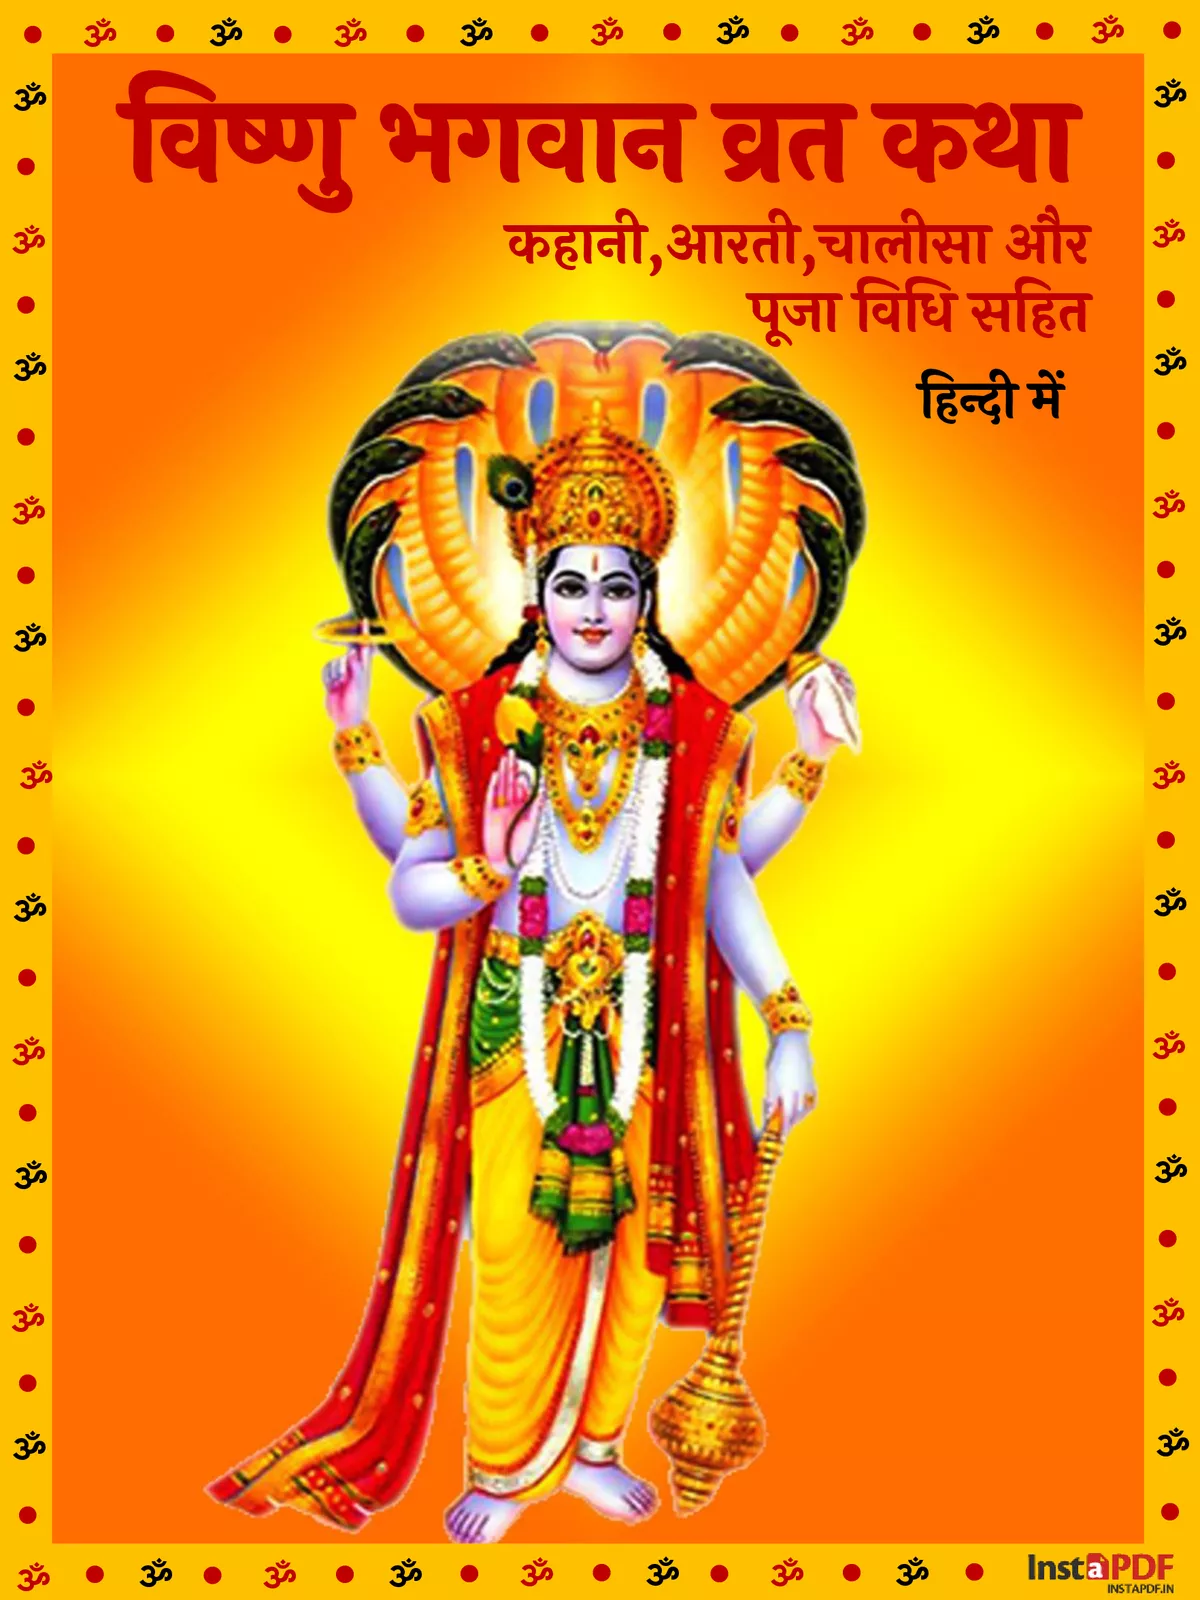 विष्णु भगवान की व्रत कथा और आरती (Vishnu Bhagwan Aarti & Vrat katha)